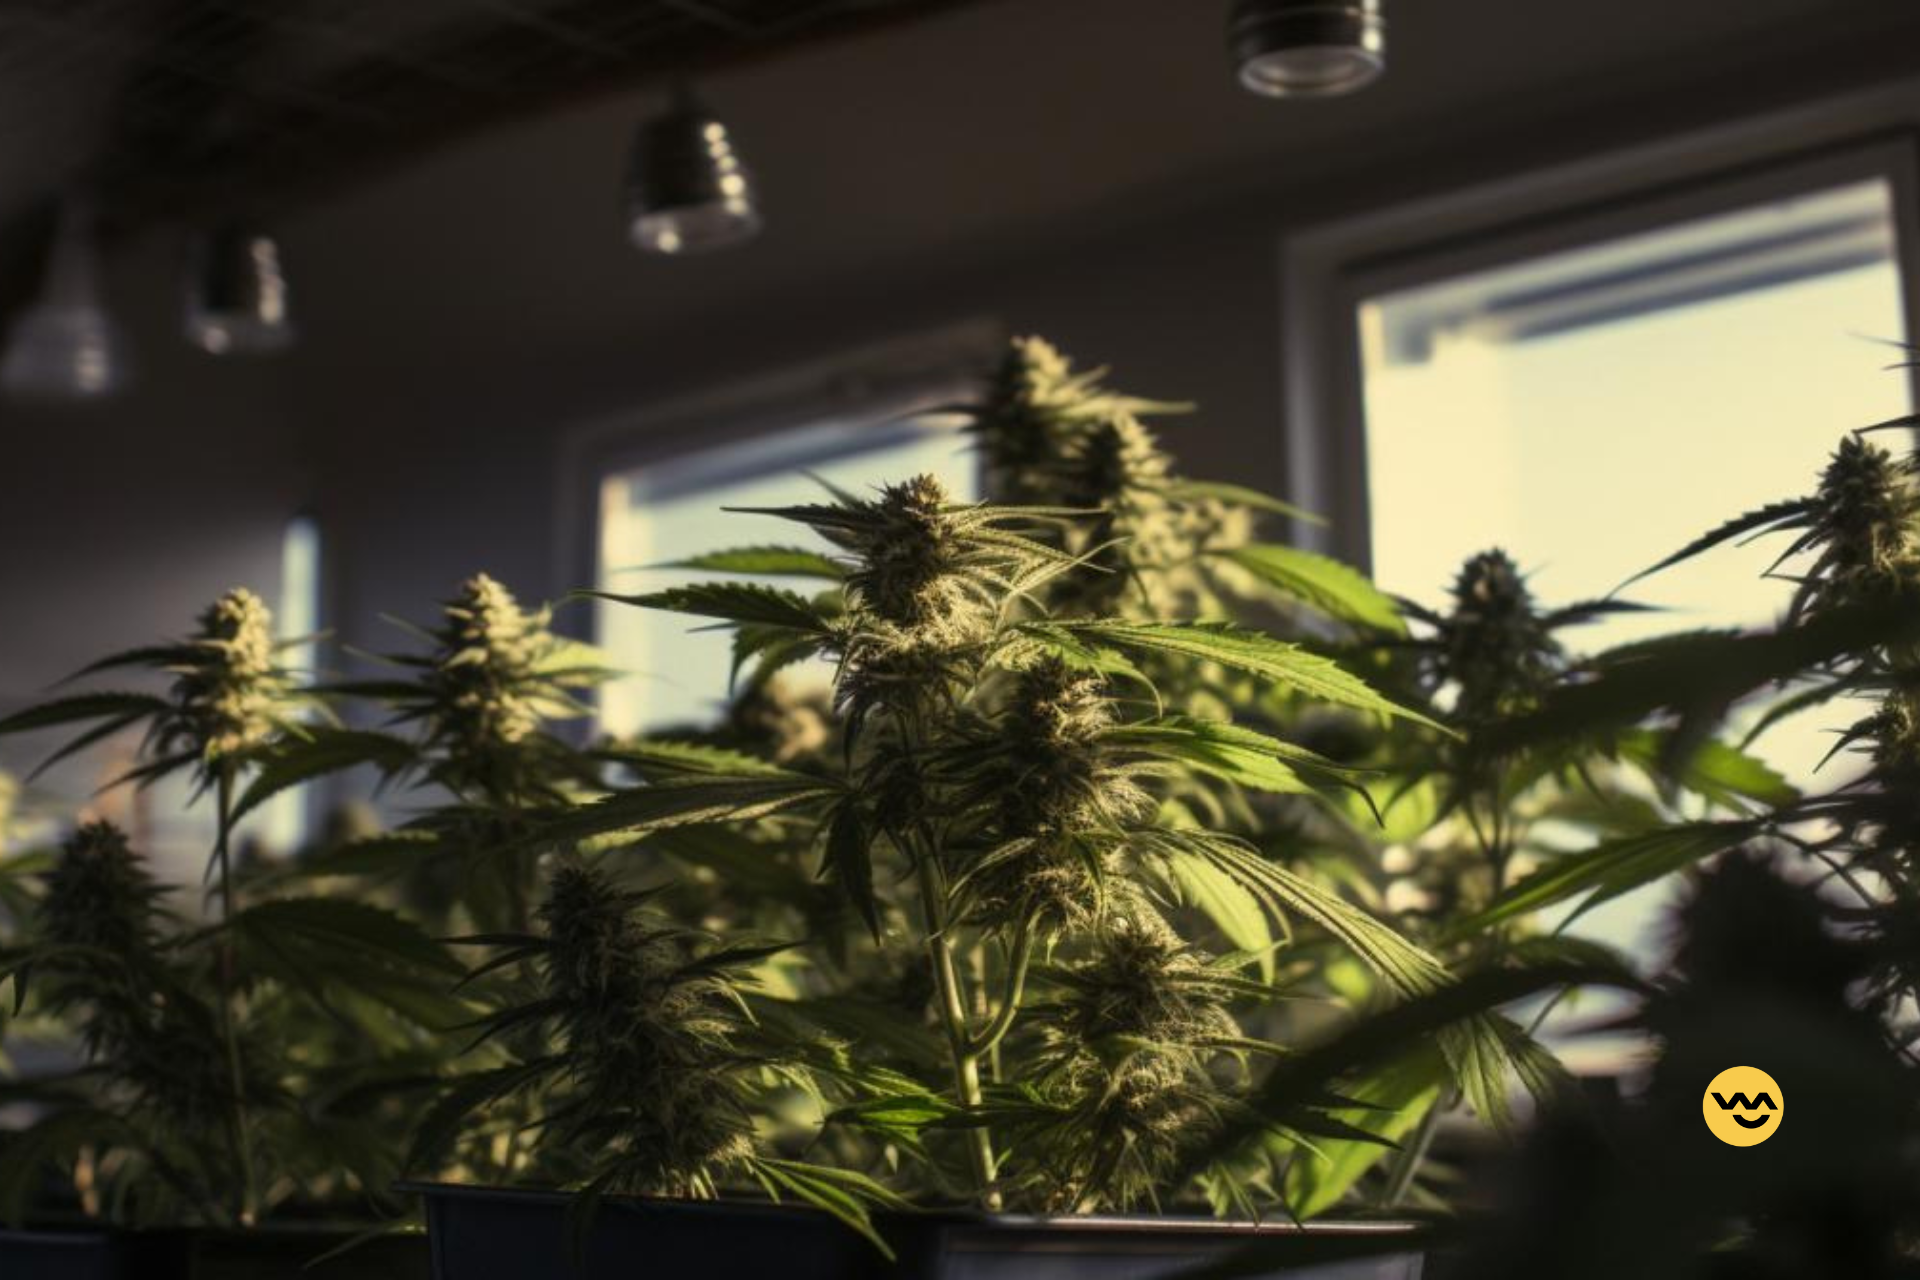 indoor cannabis growing